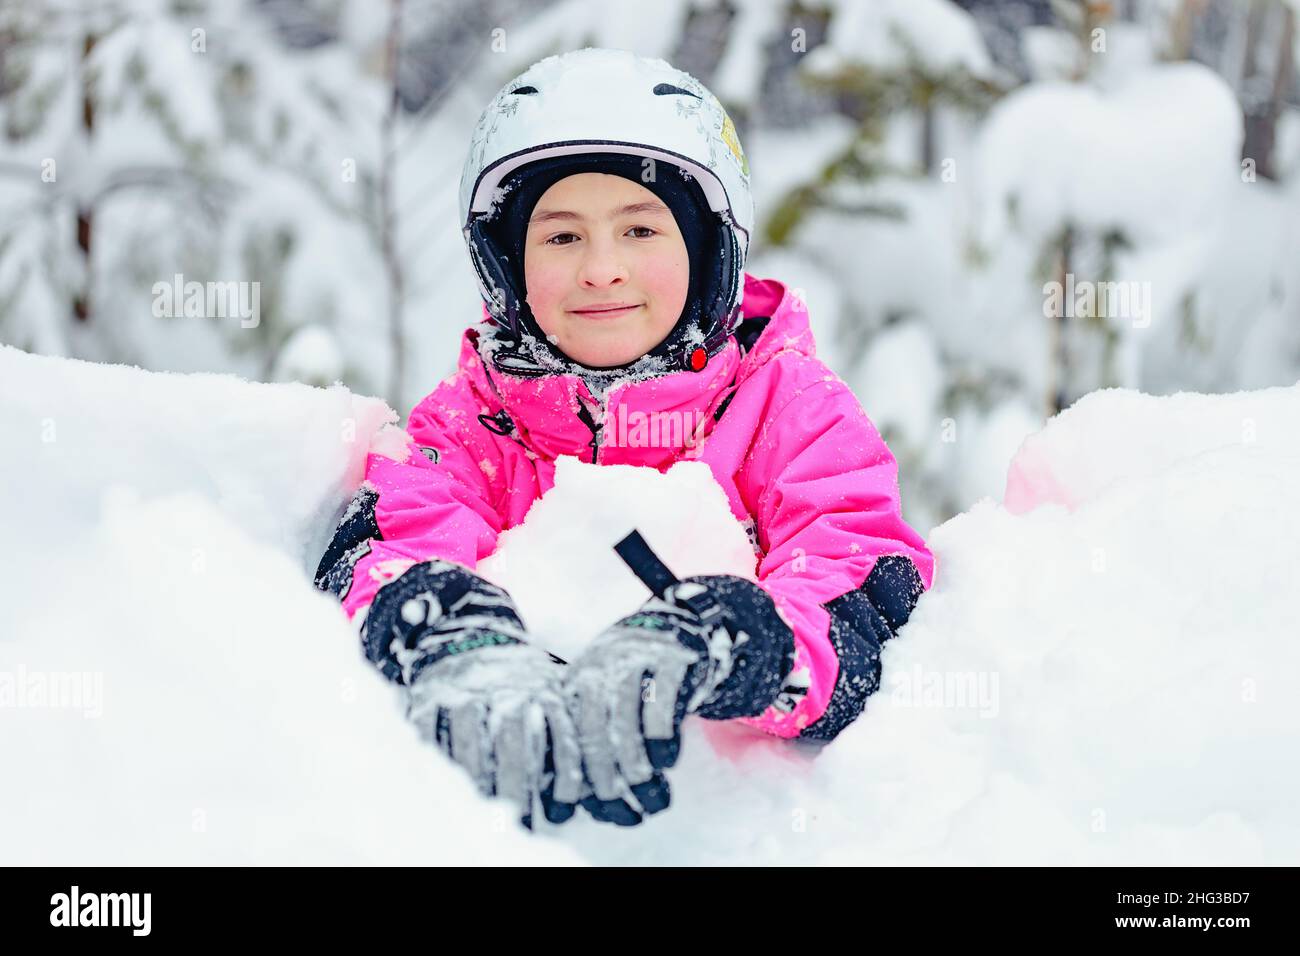 Adorable bonbonne de neige de fille dans des vêtements d'hiver lumineux passe du temps dans un parc de snowboard enneigé.Fille souriante d'origine caucasienne sur l'hiver en plein air recr Banque D'Images